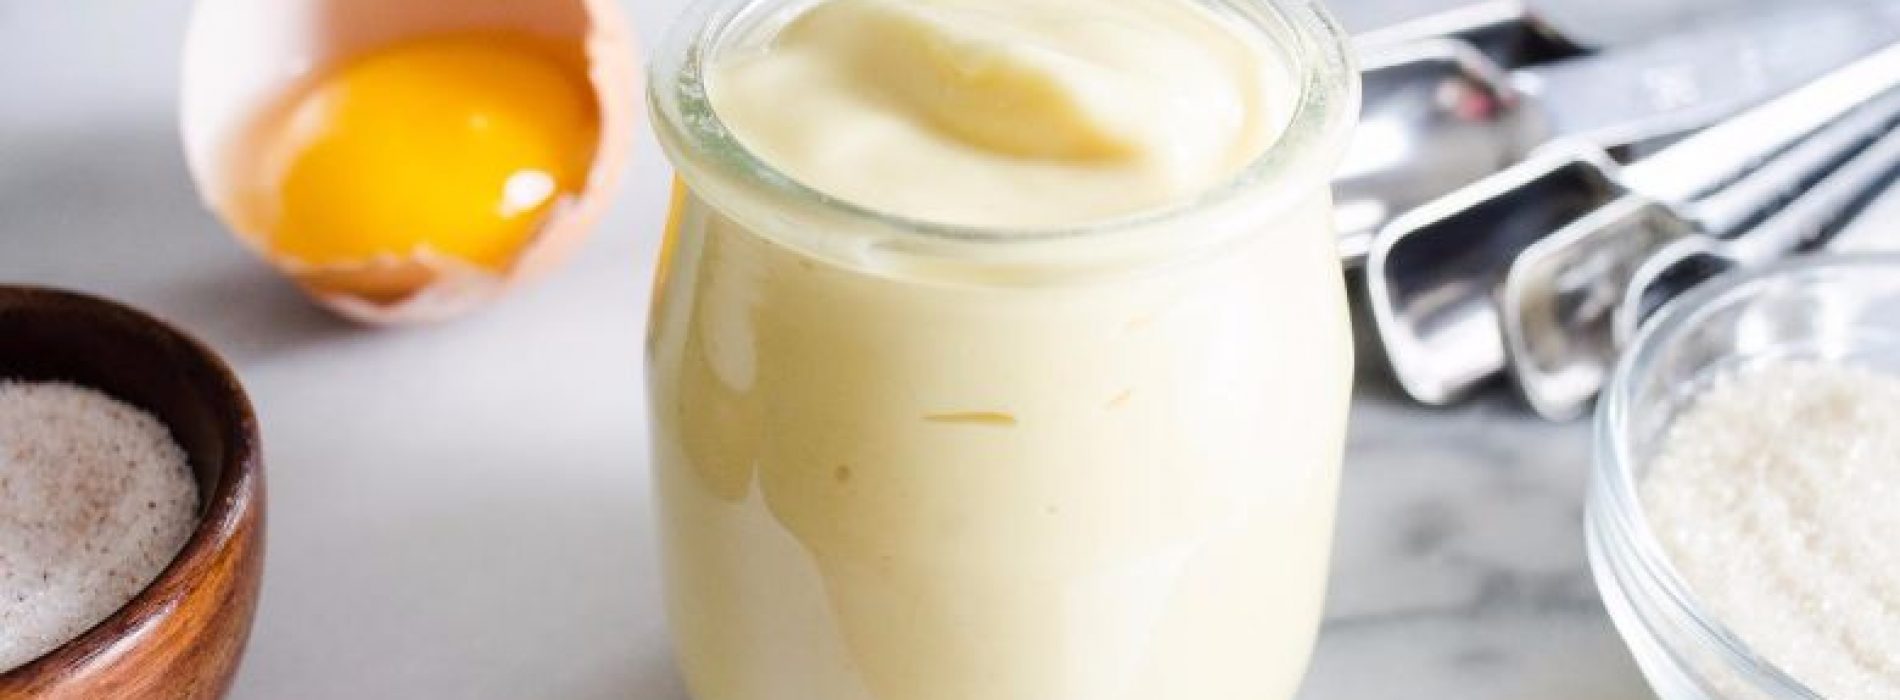 Er bestaat dus een Gezonde mayonaise variant en die maak je heel makkelijk zelf!